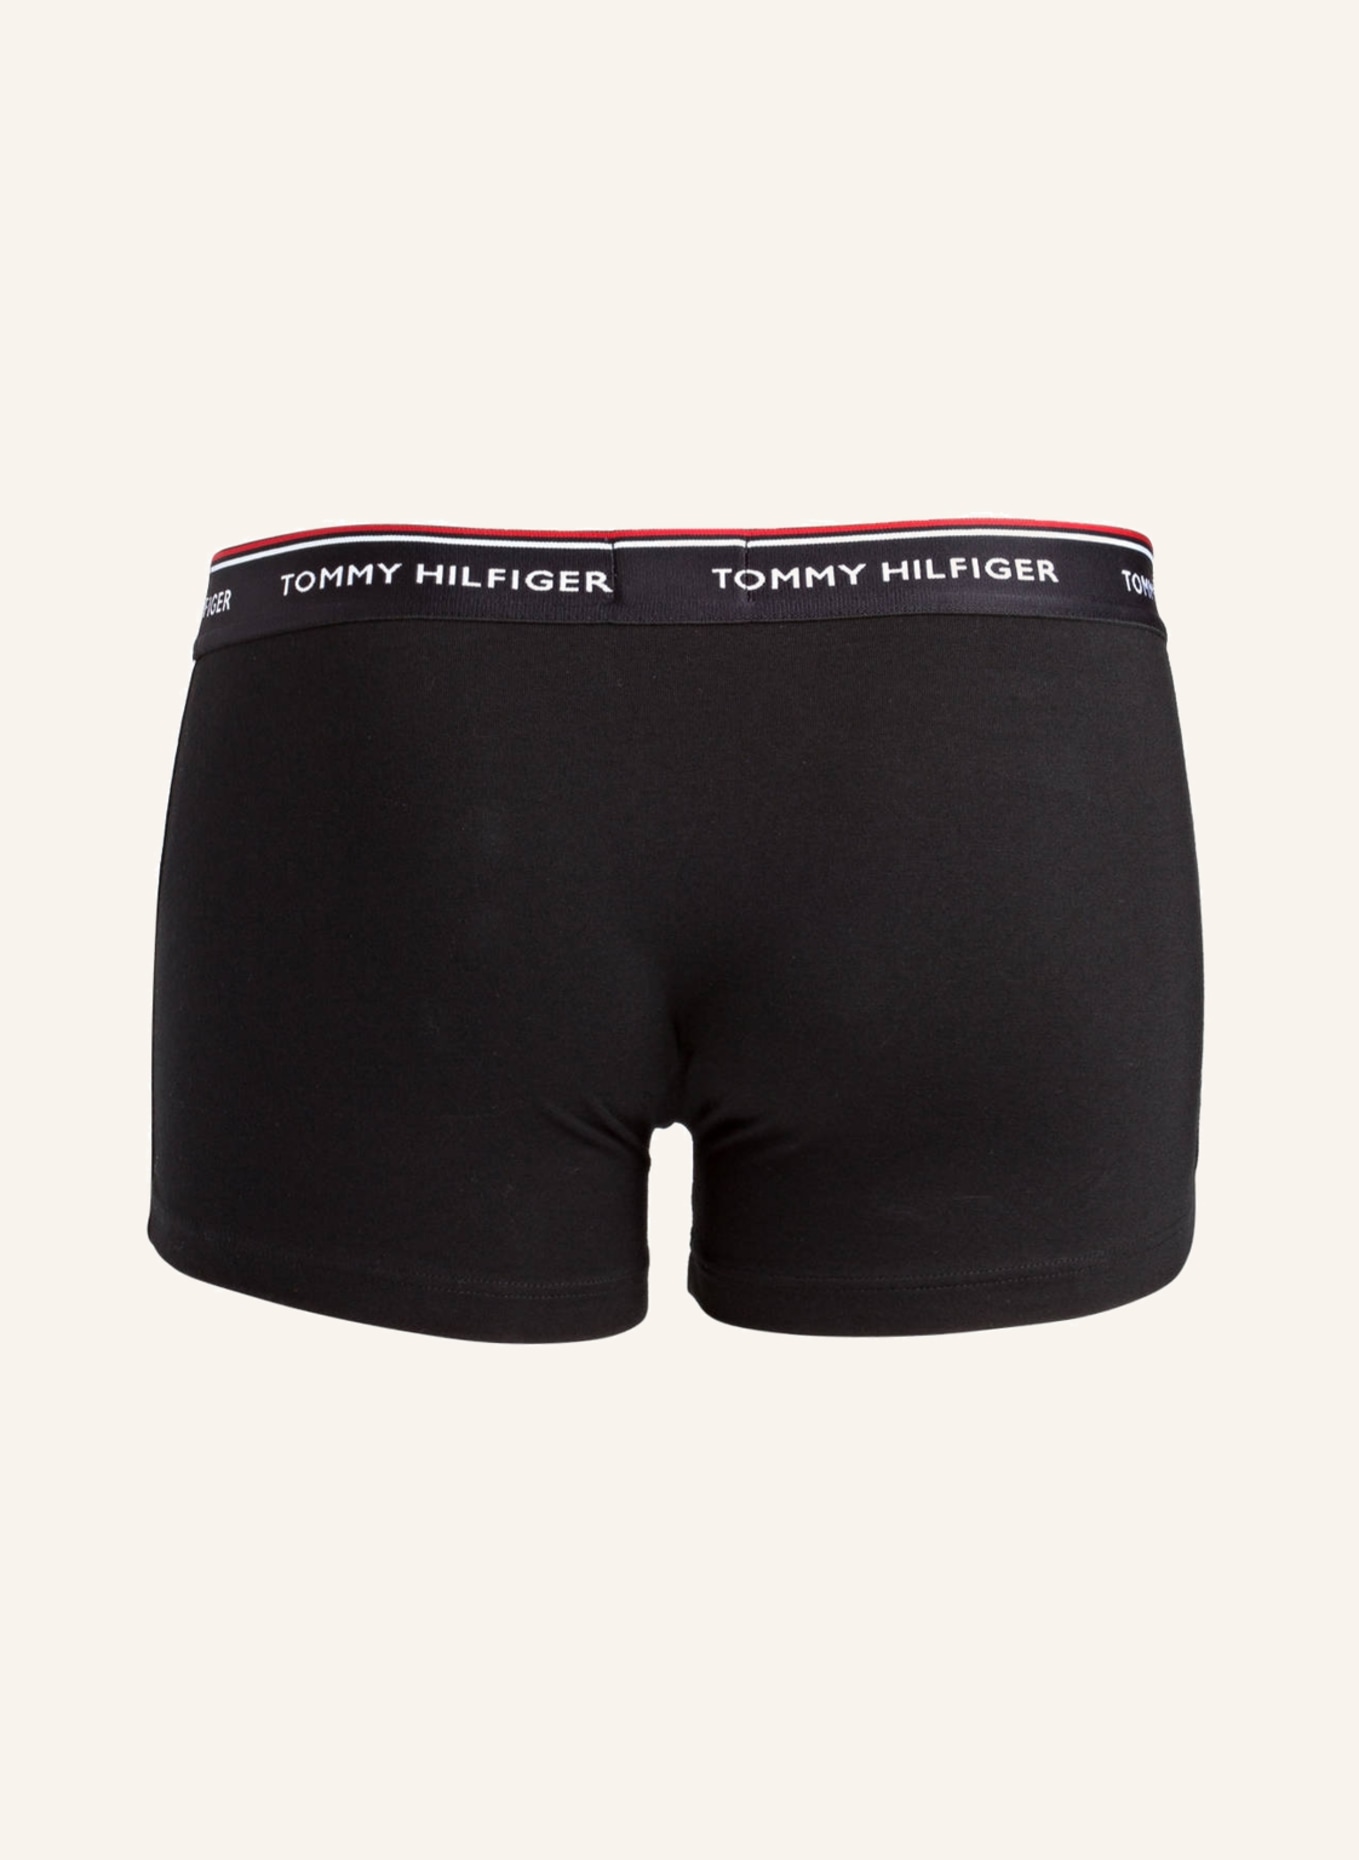 TOMMY HILFIGER 3-pack boxer shorts, Color: BLACK (Image 2)